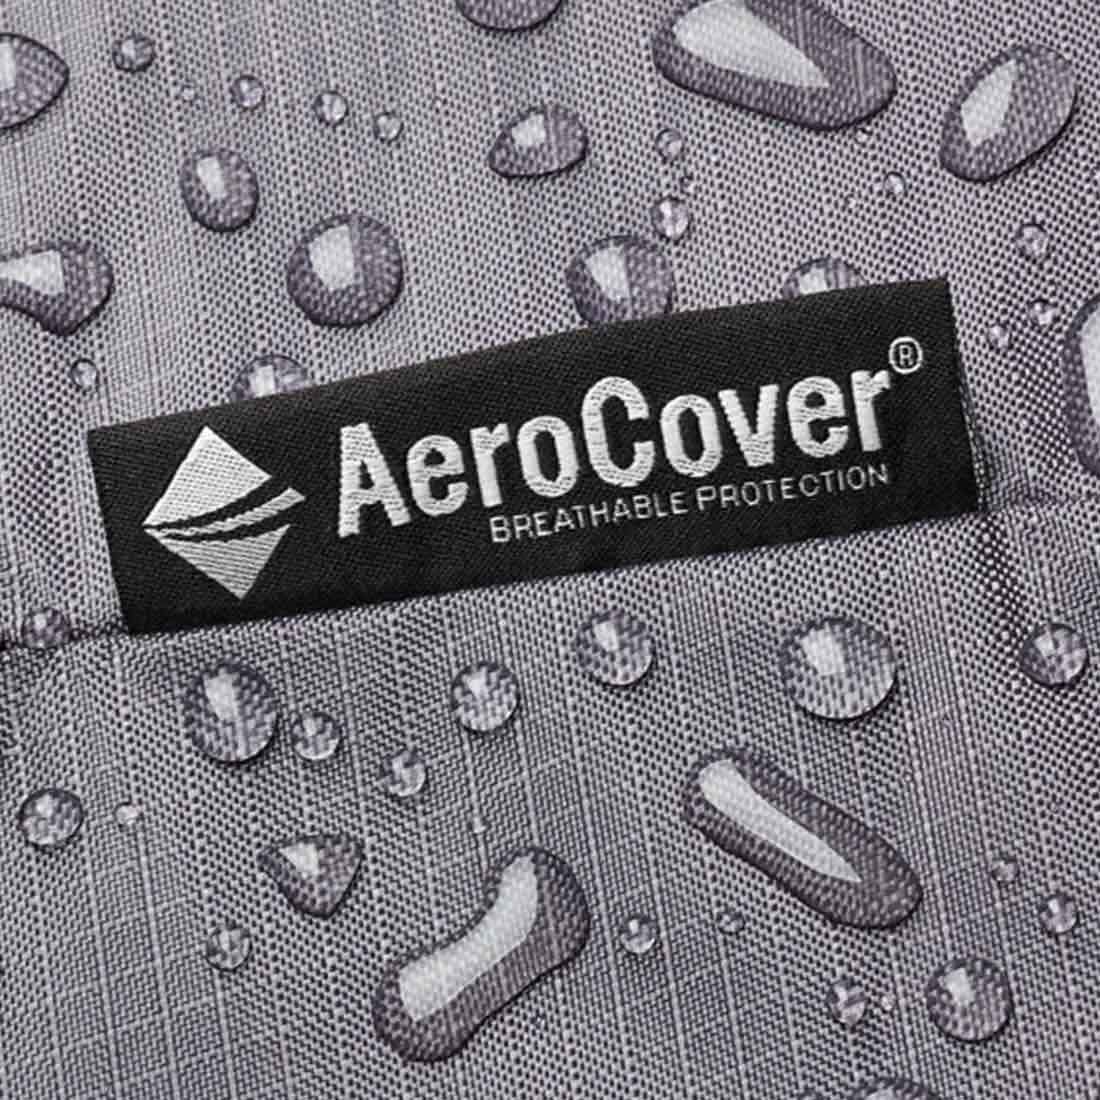 AeroCover Schutzhülle für Sitzgruppe 270x210x70cm Polyester